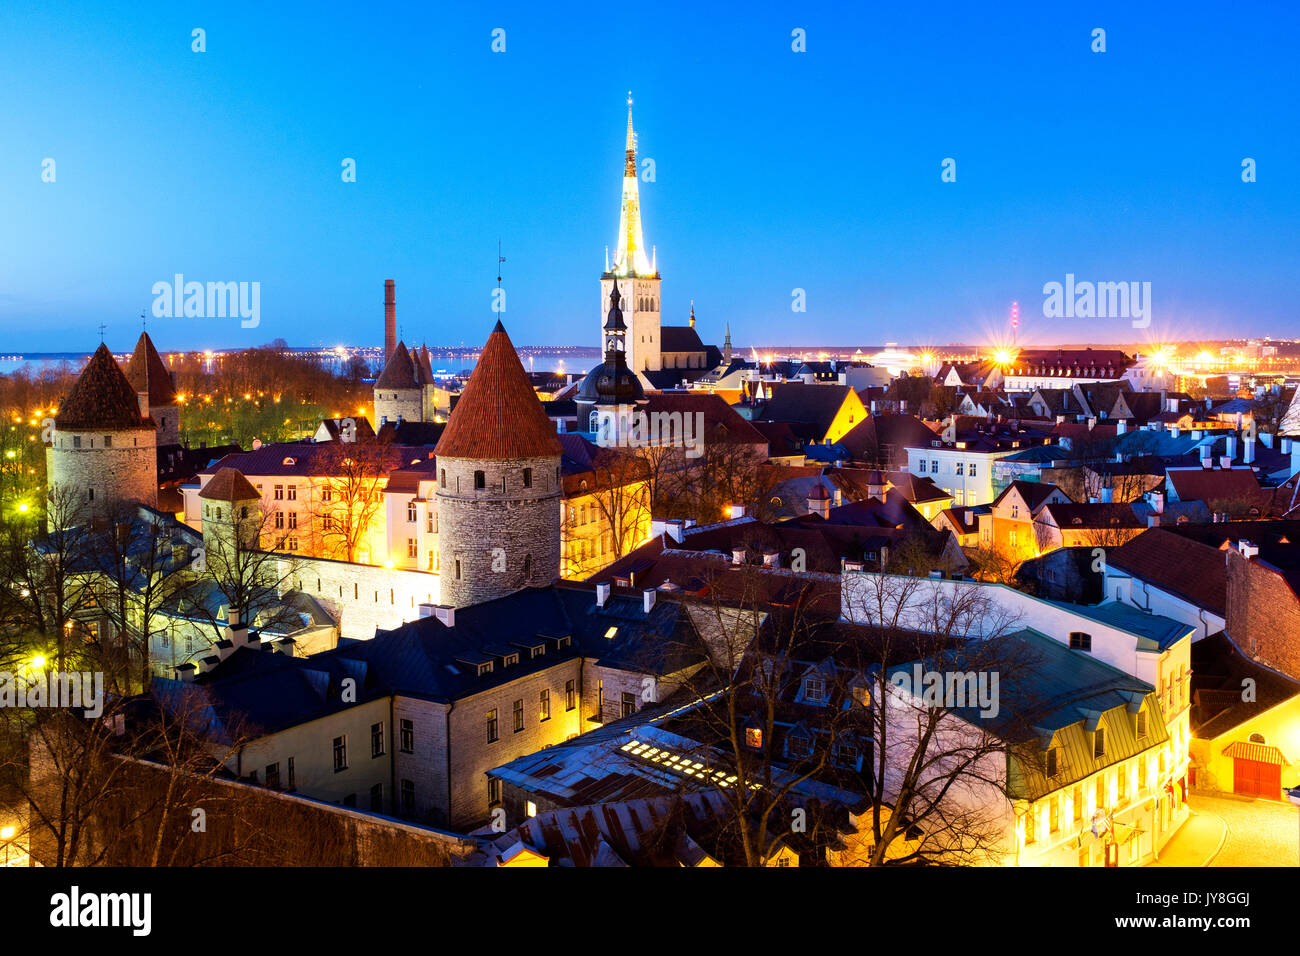 Vue panoramique de la vieille ville de Tallinn à partir de la plate-forme d'observation Piiskopi, Tallinn, Estonie Banque D'Images